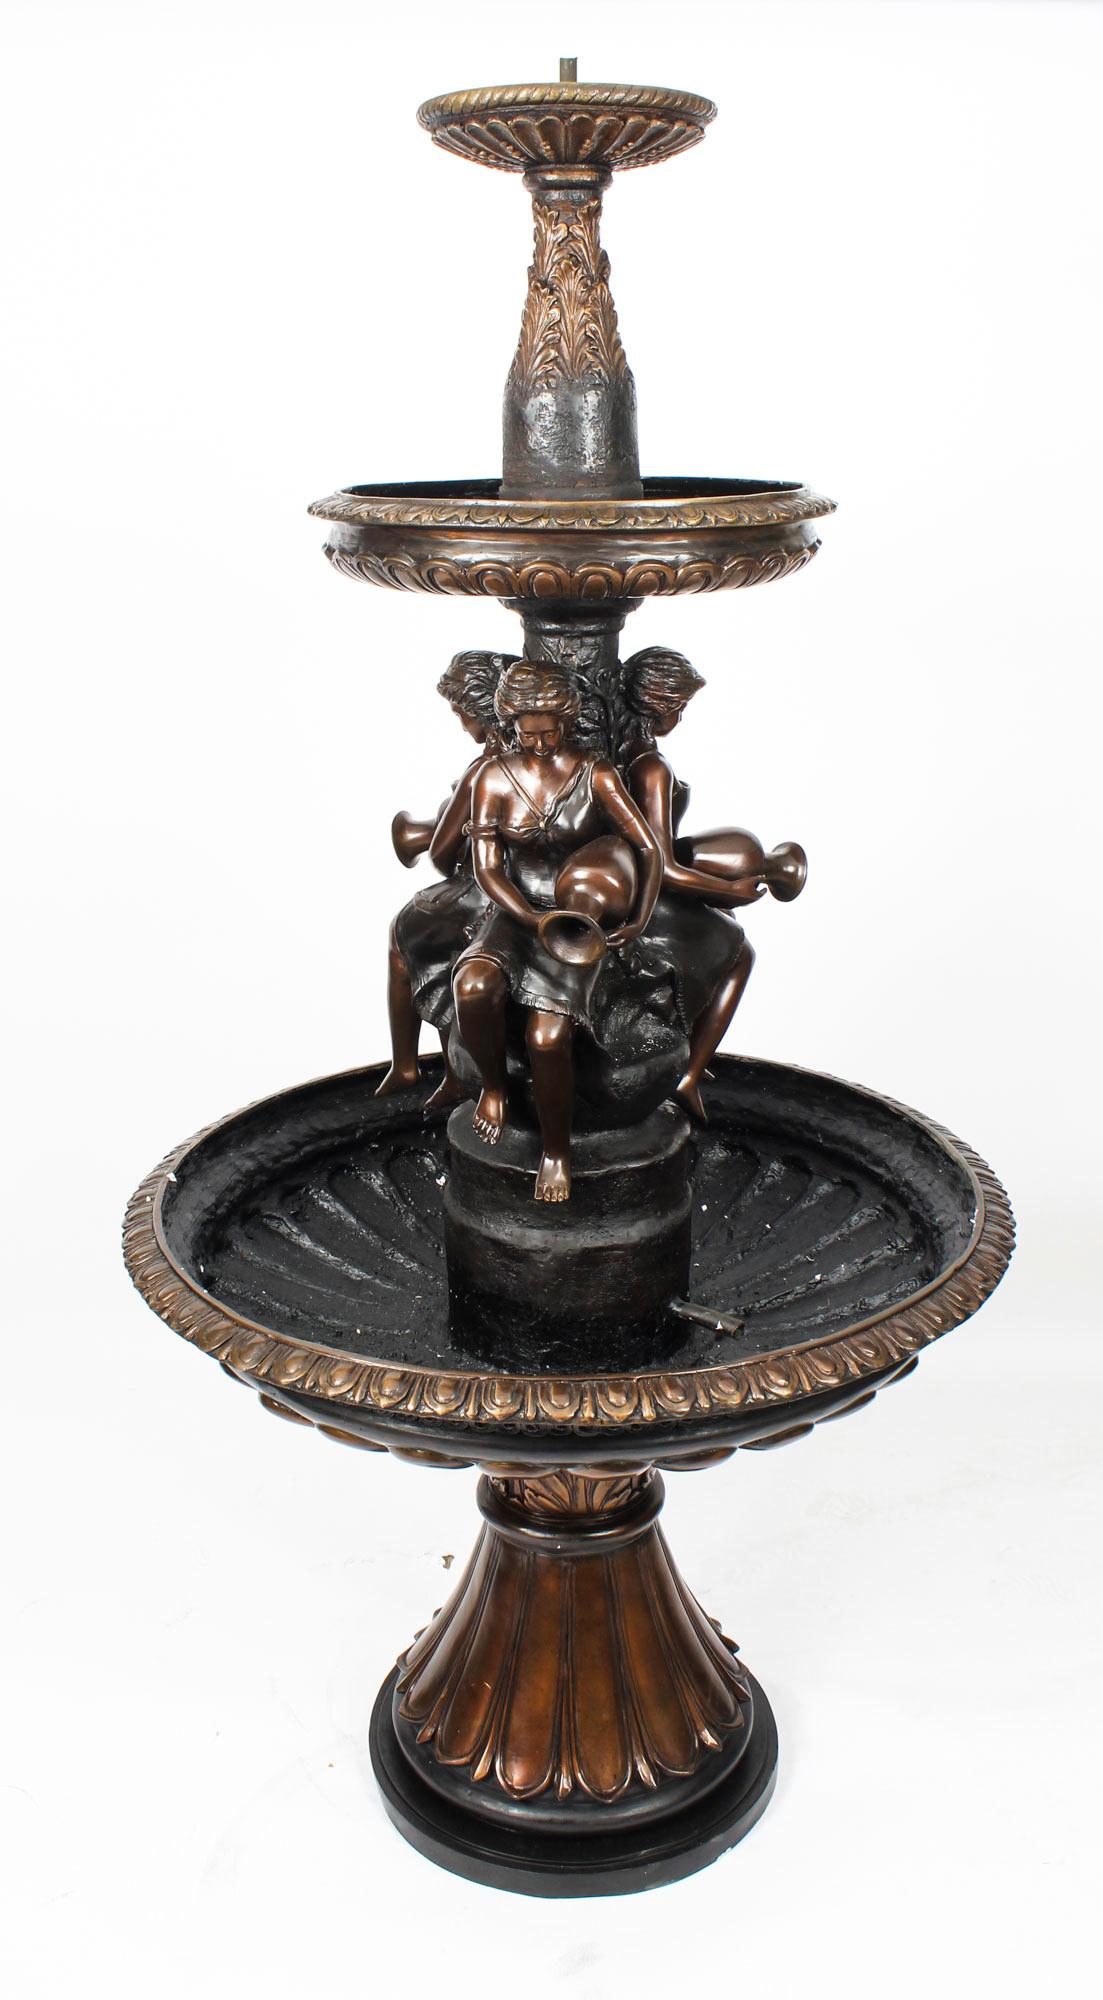 Il s'agit d'une belle fontaine de jardin à trois niveaux sculptée en bronze dans le style victorien, datant de la fin du 20ème siècle.
 
La fontaine est fortement décorée de feuilles d'acanthe, d'anthemion et de cannelures en haut-relief.

L'eau